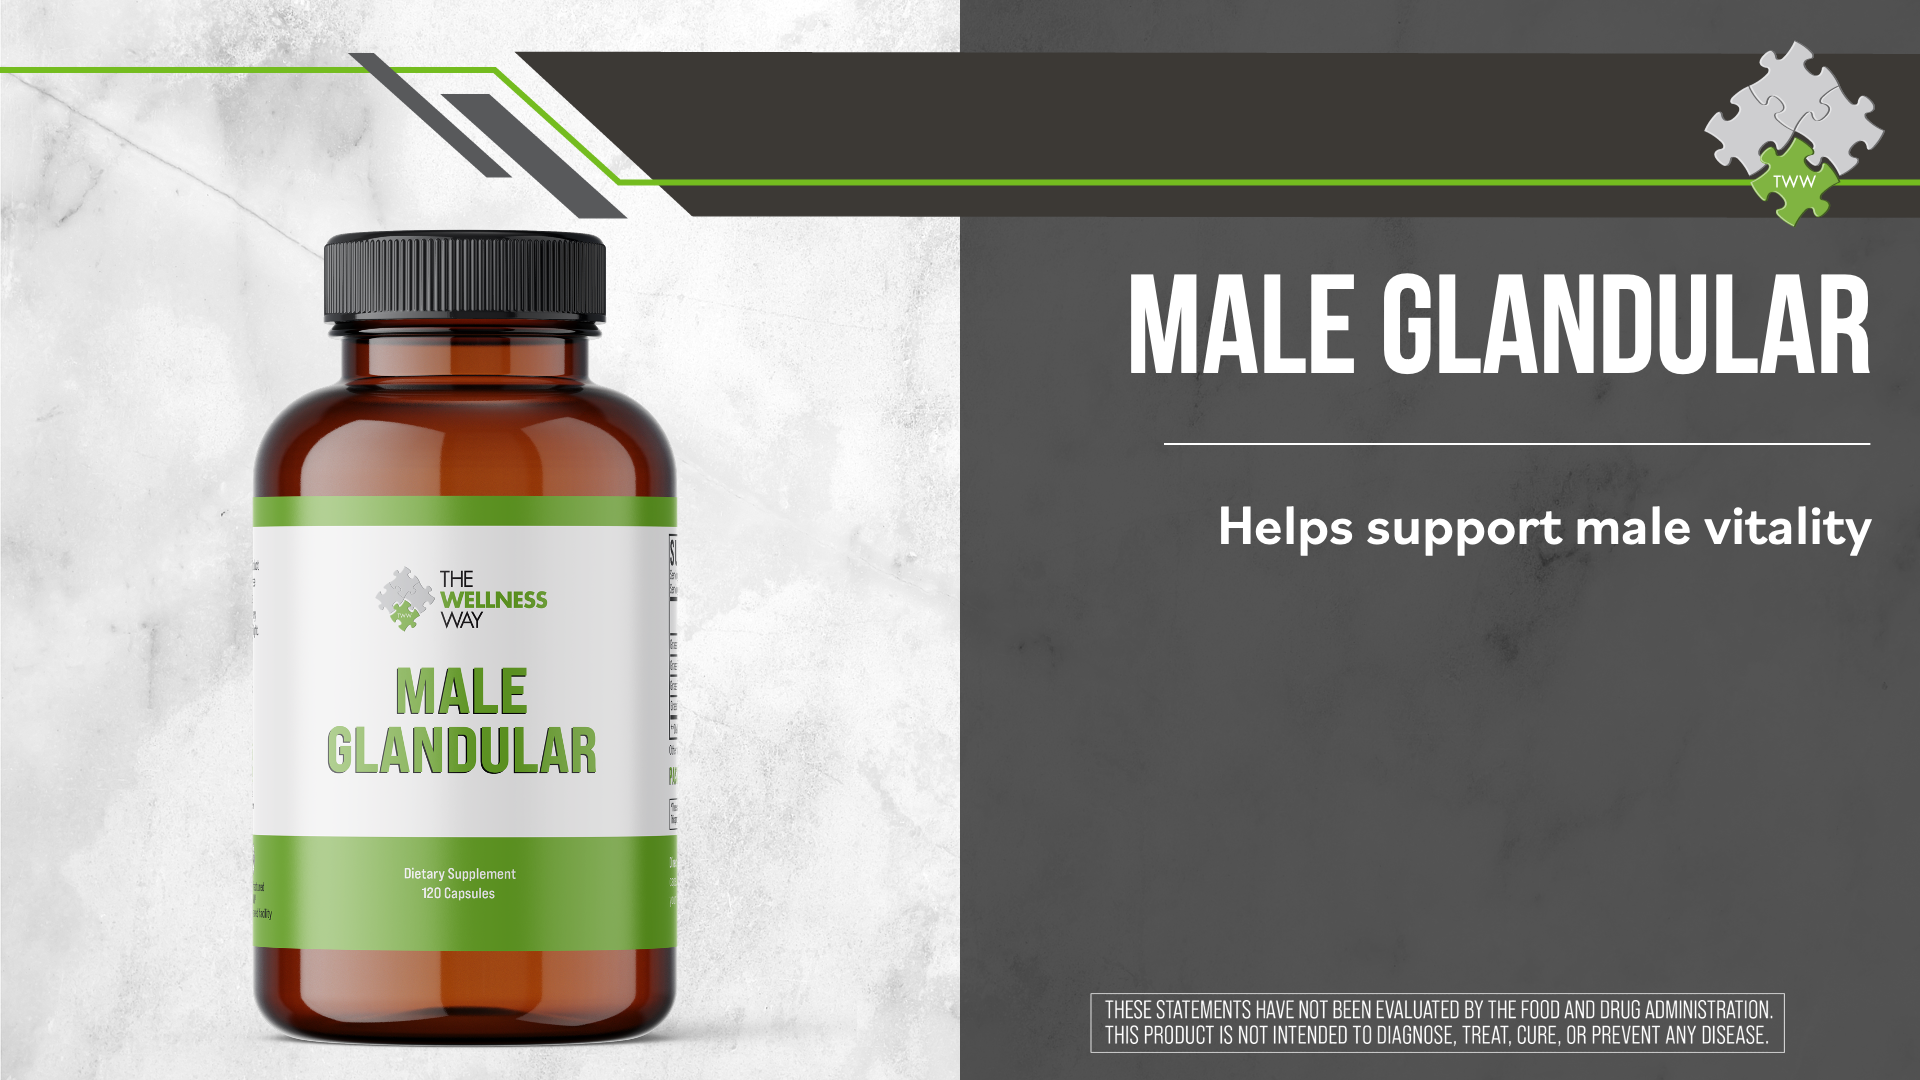 A bottle of Wellness Way's Male Glandular Supplement